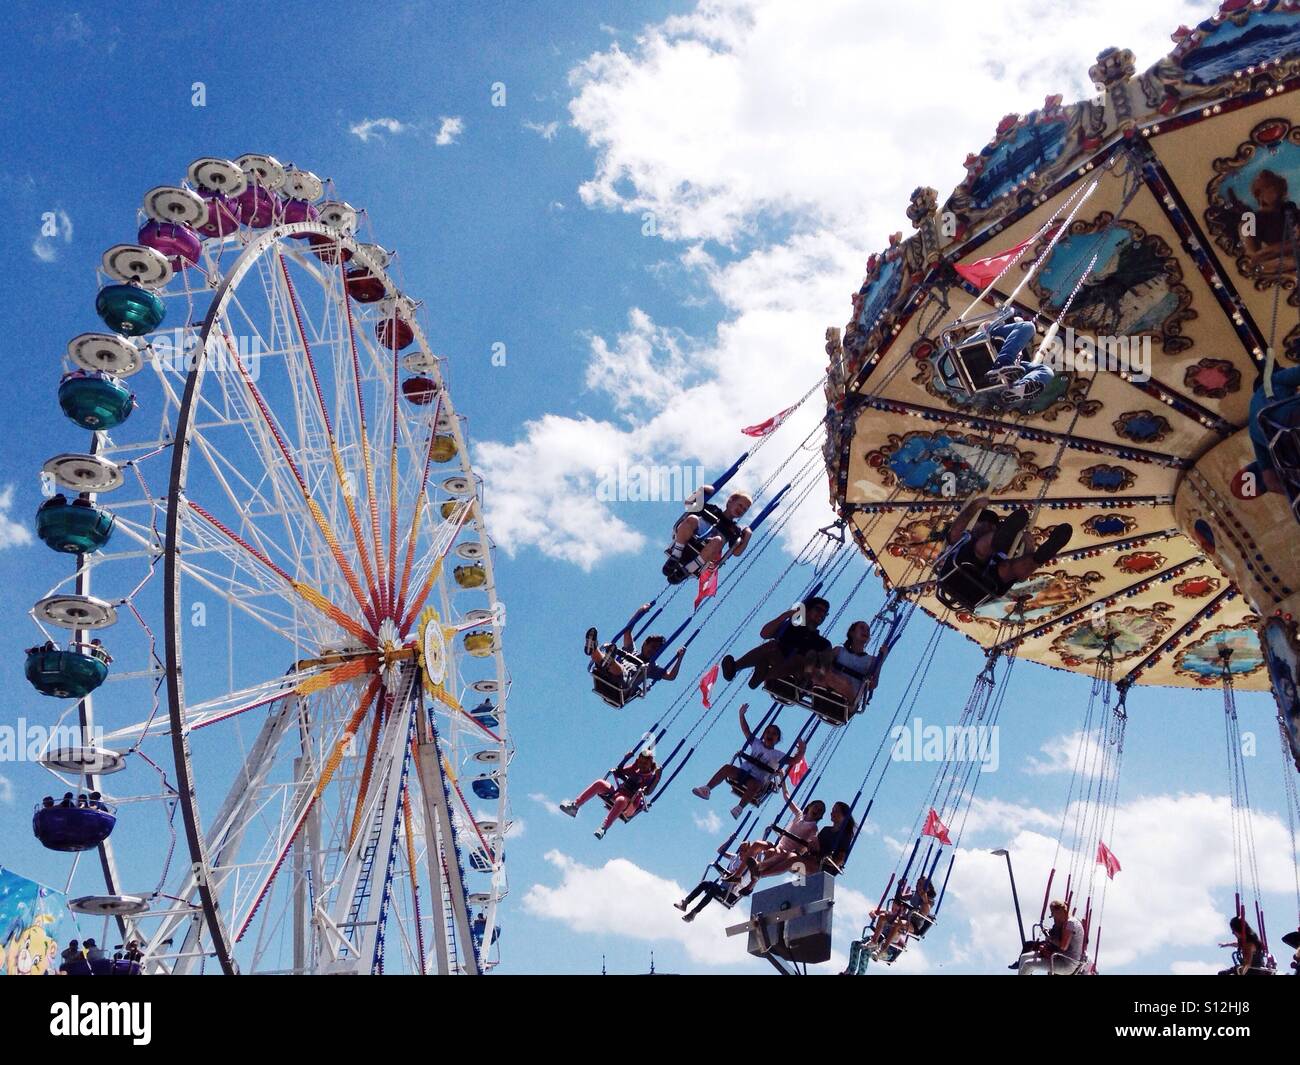 A merry-go-round and ferris wheel at a summer fair. Zurich, Switzerland. Stock Photo